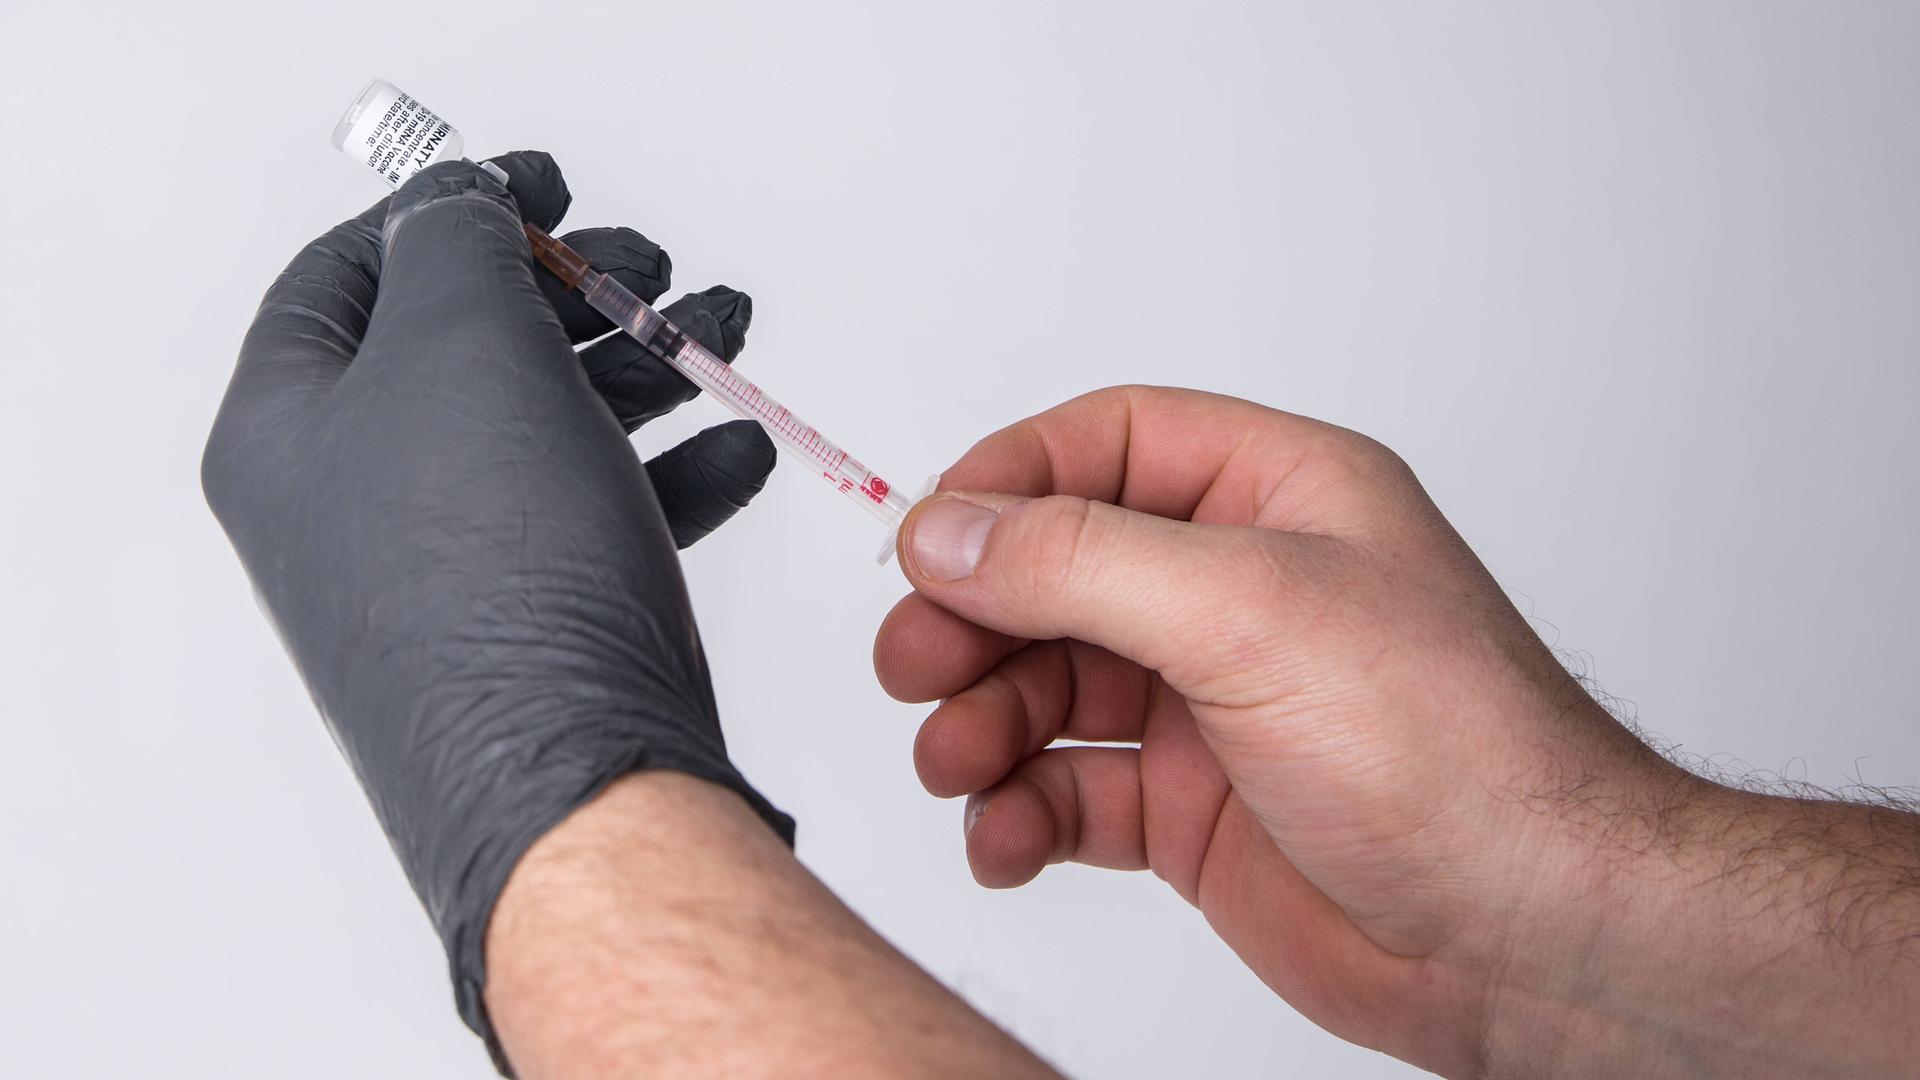 Eine Person mit einem schwarzen Schutzhandschuh zieht mit einer Impfspritze eine Impfdosis auf.